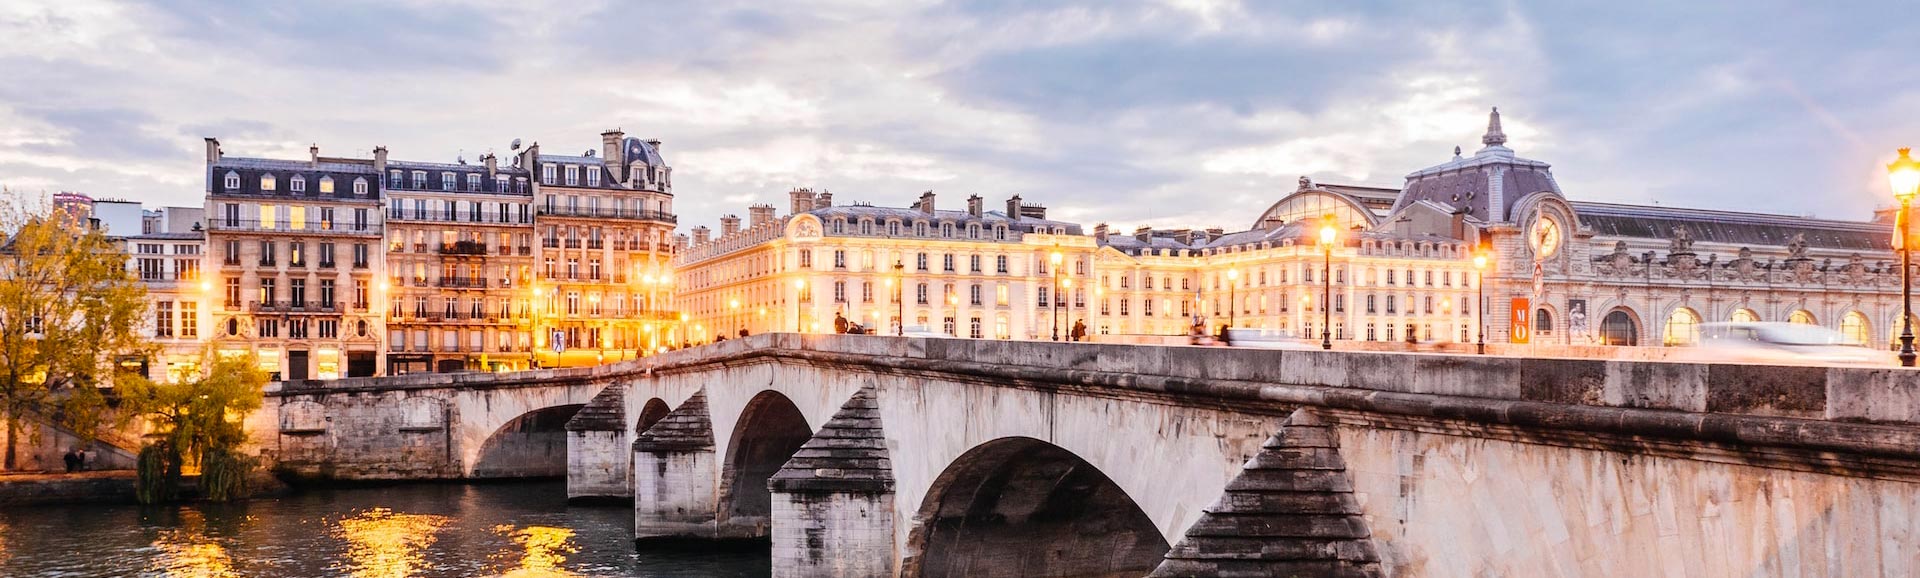 Edifici di Parigi con ponte e fiume in primo piano